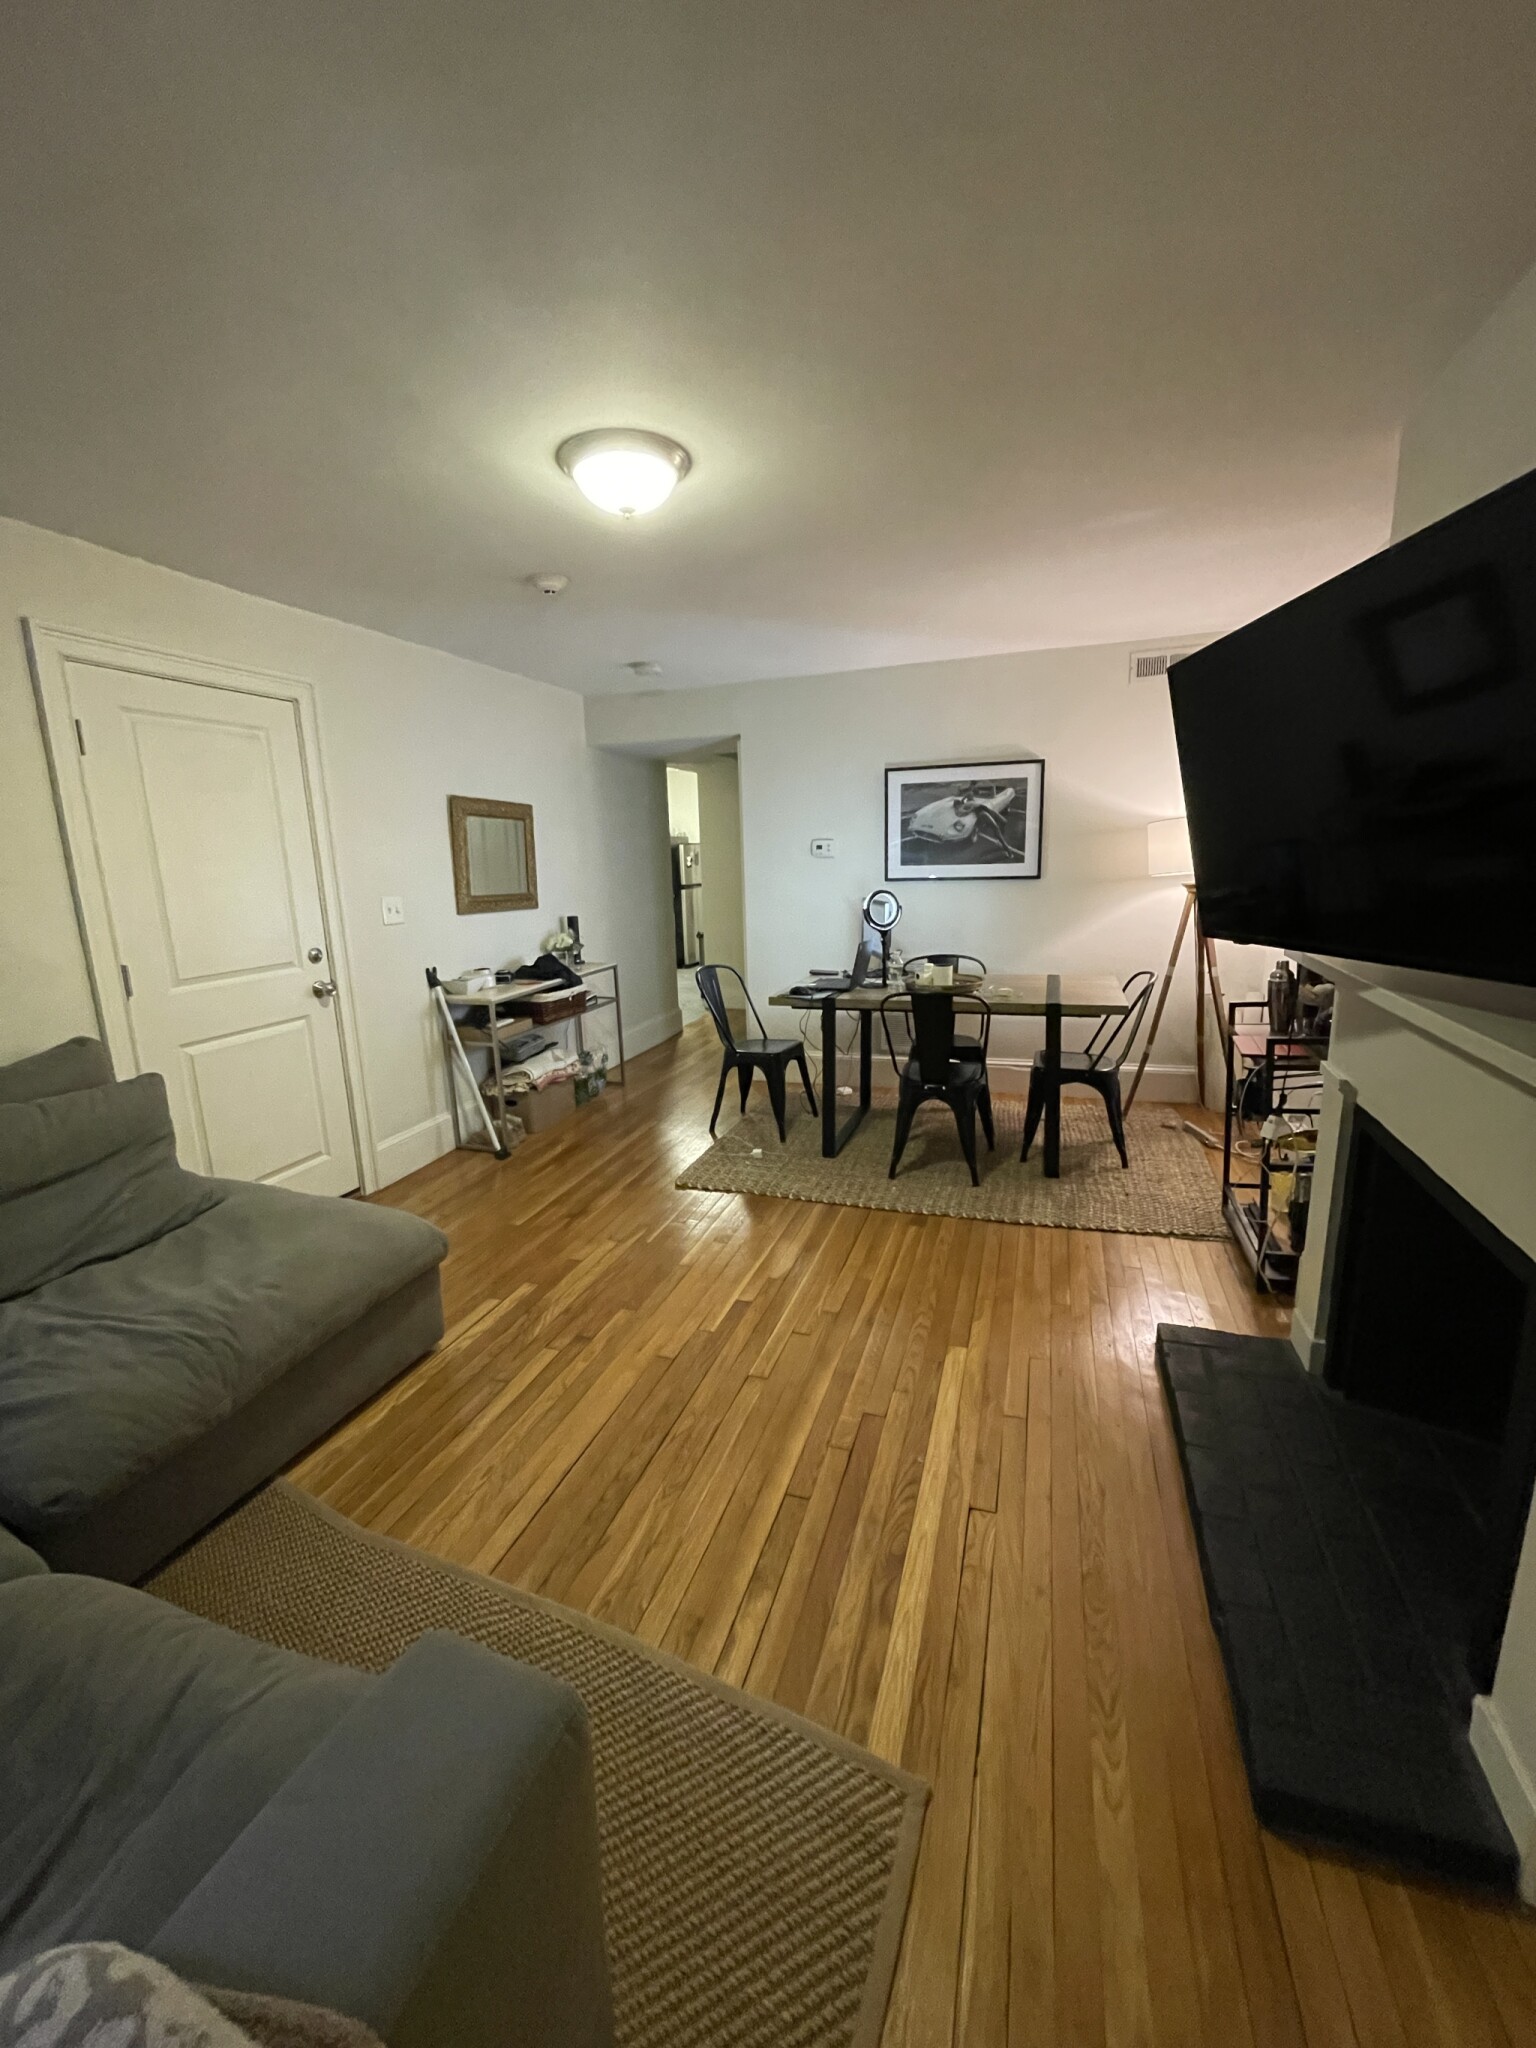 Photos of apartment on Nashua St.,Boston MA 02114